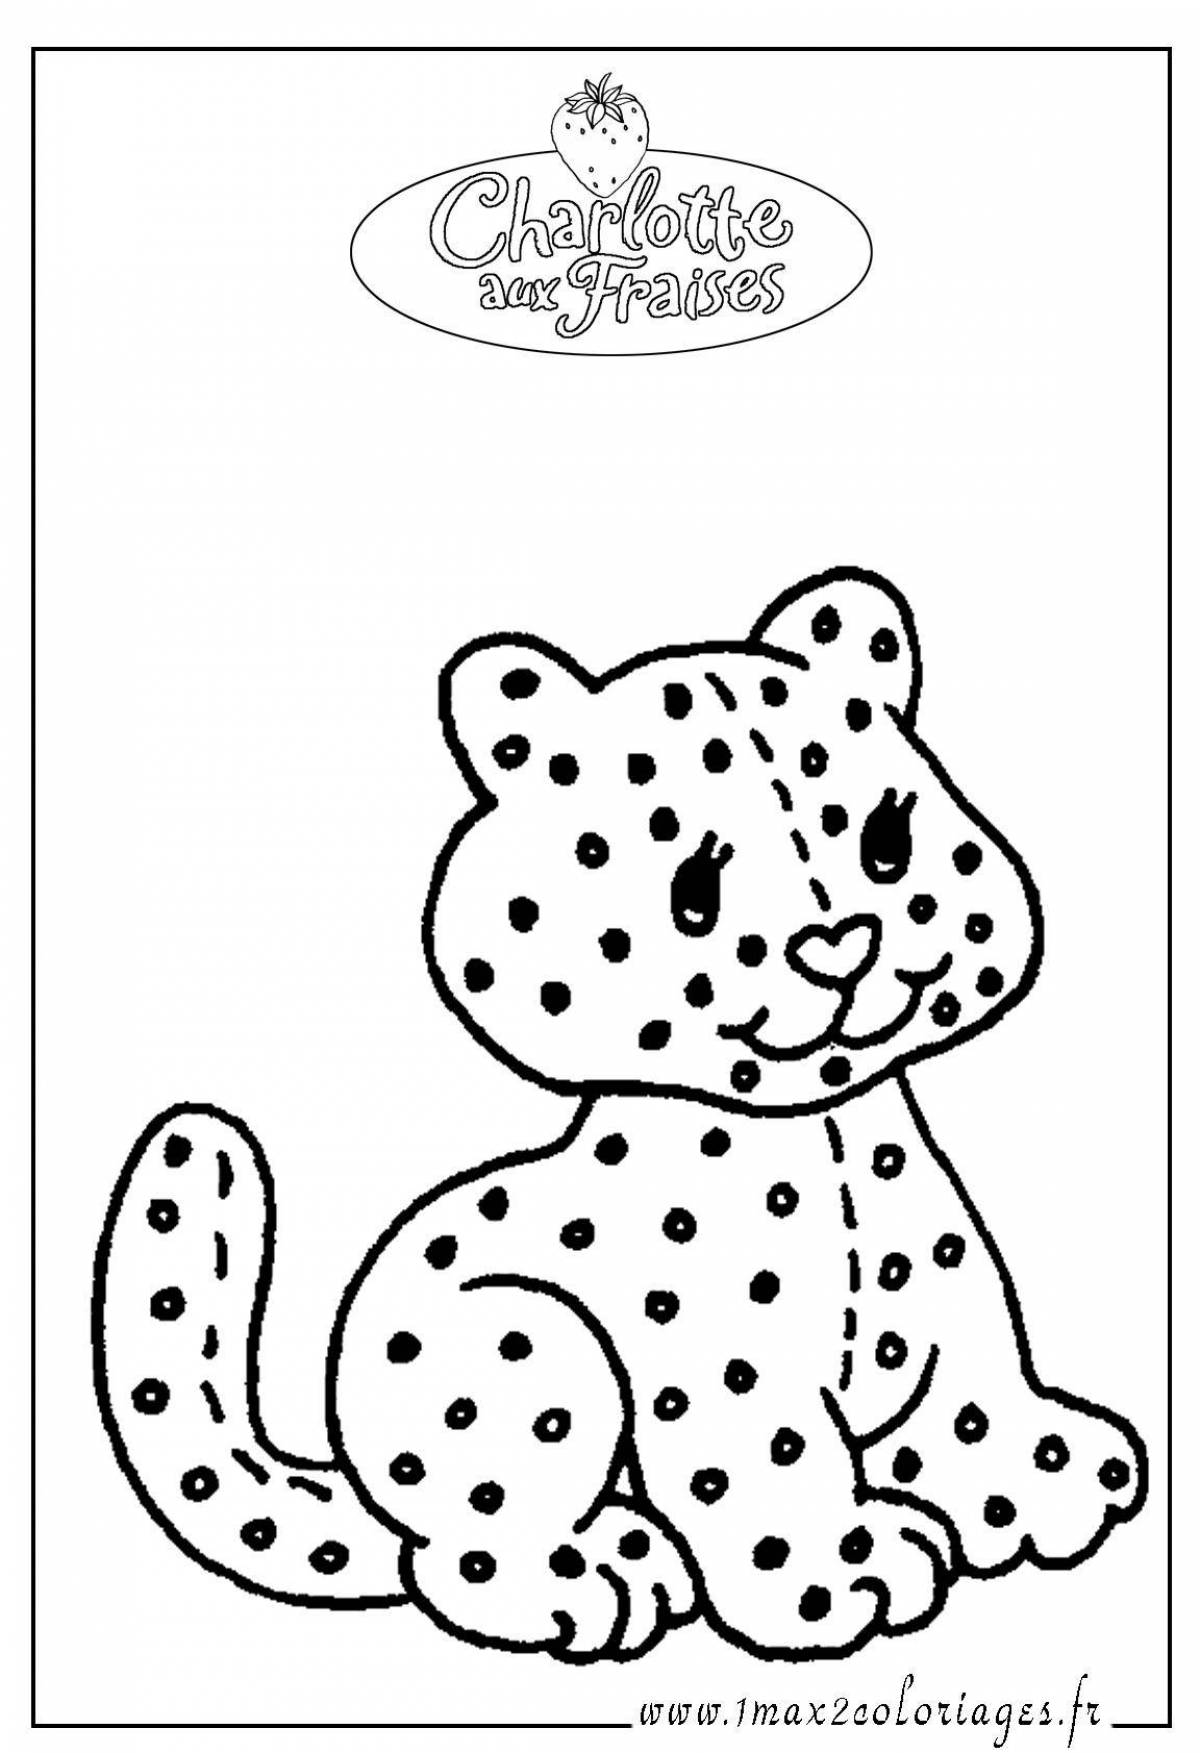 Игривая леопардовая раскраска для детей 5-6 лет